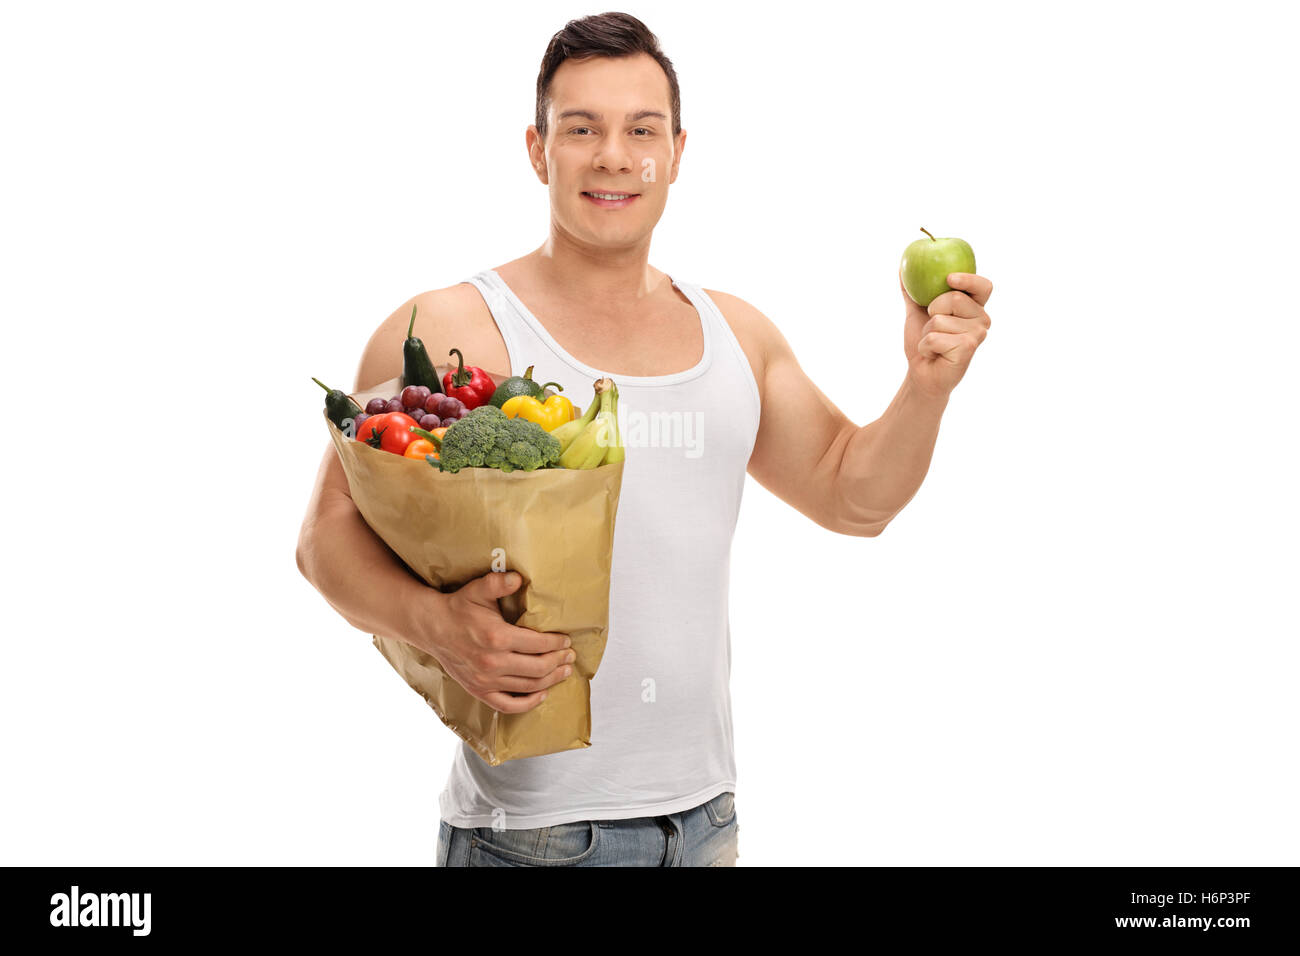 Junger Mann hält eine Einkaufstasche voller Obst und Gemüse und ein Apfel isoliert auf weißem Hintergrund Stockfoto